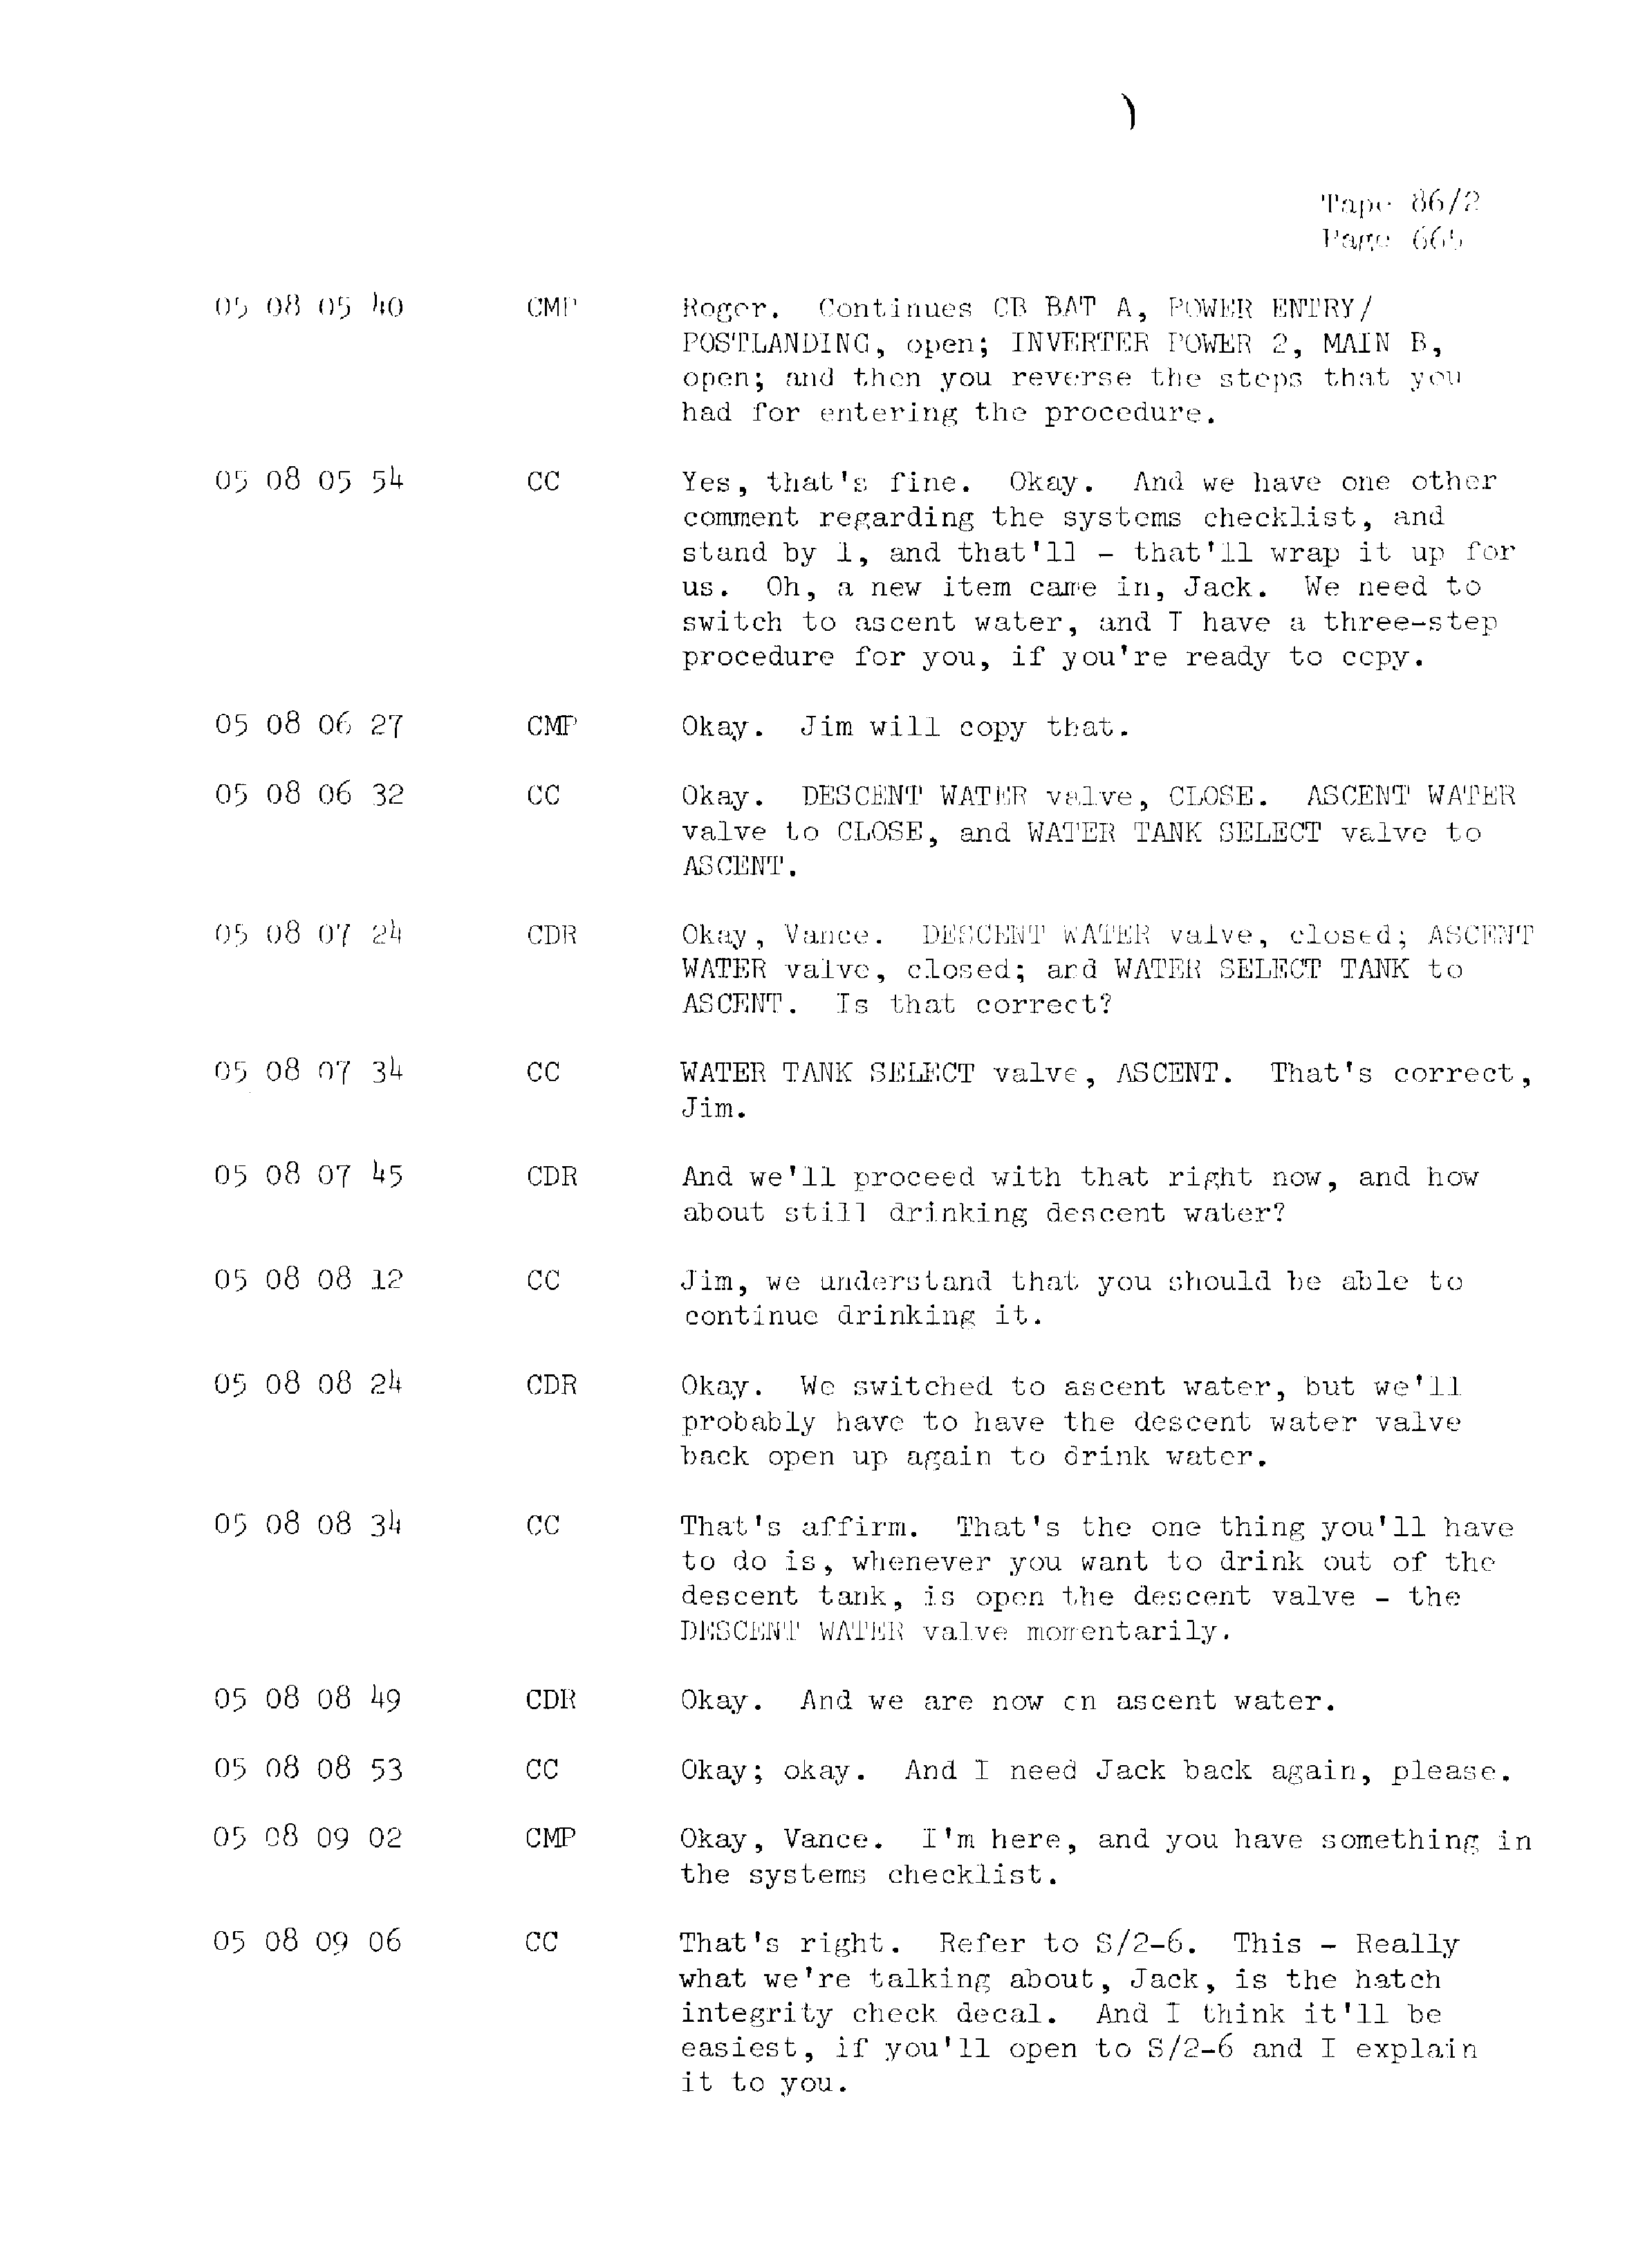 Page 672 of Apollo 13’s original transcript